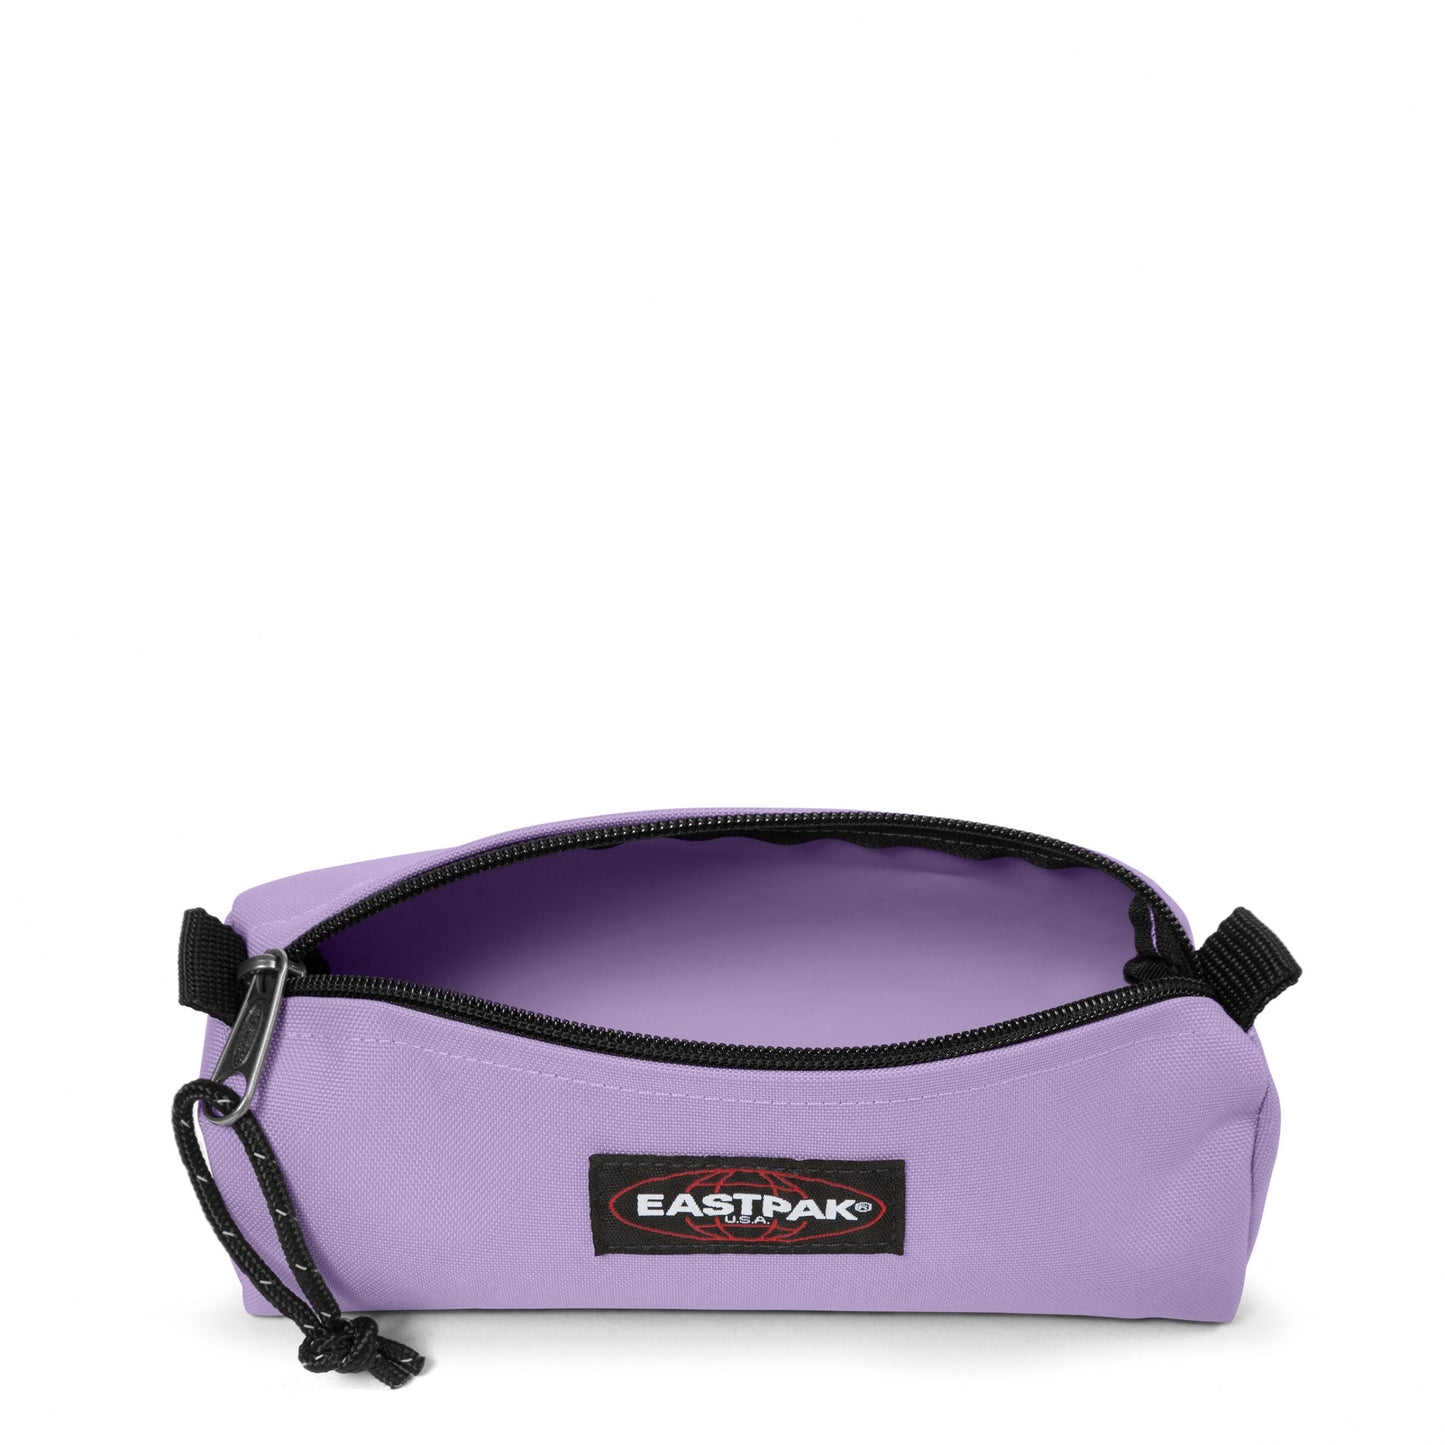 Eastpak  Benchmark single  lavender lilac